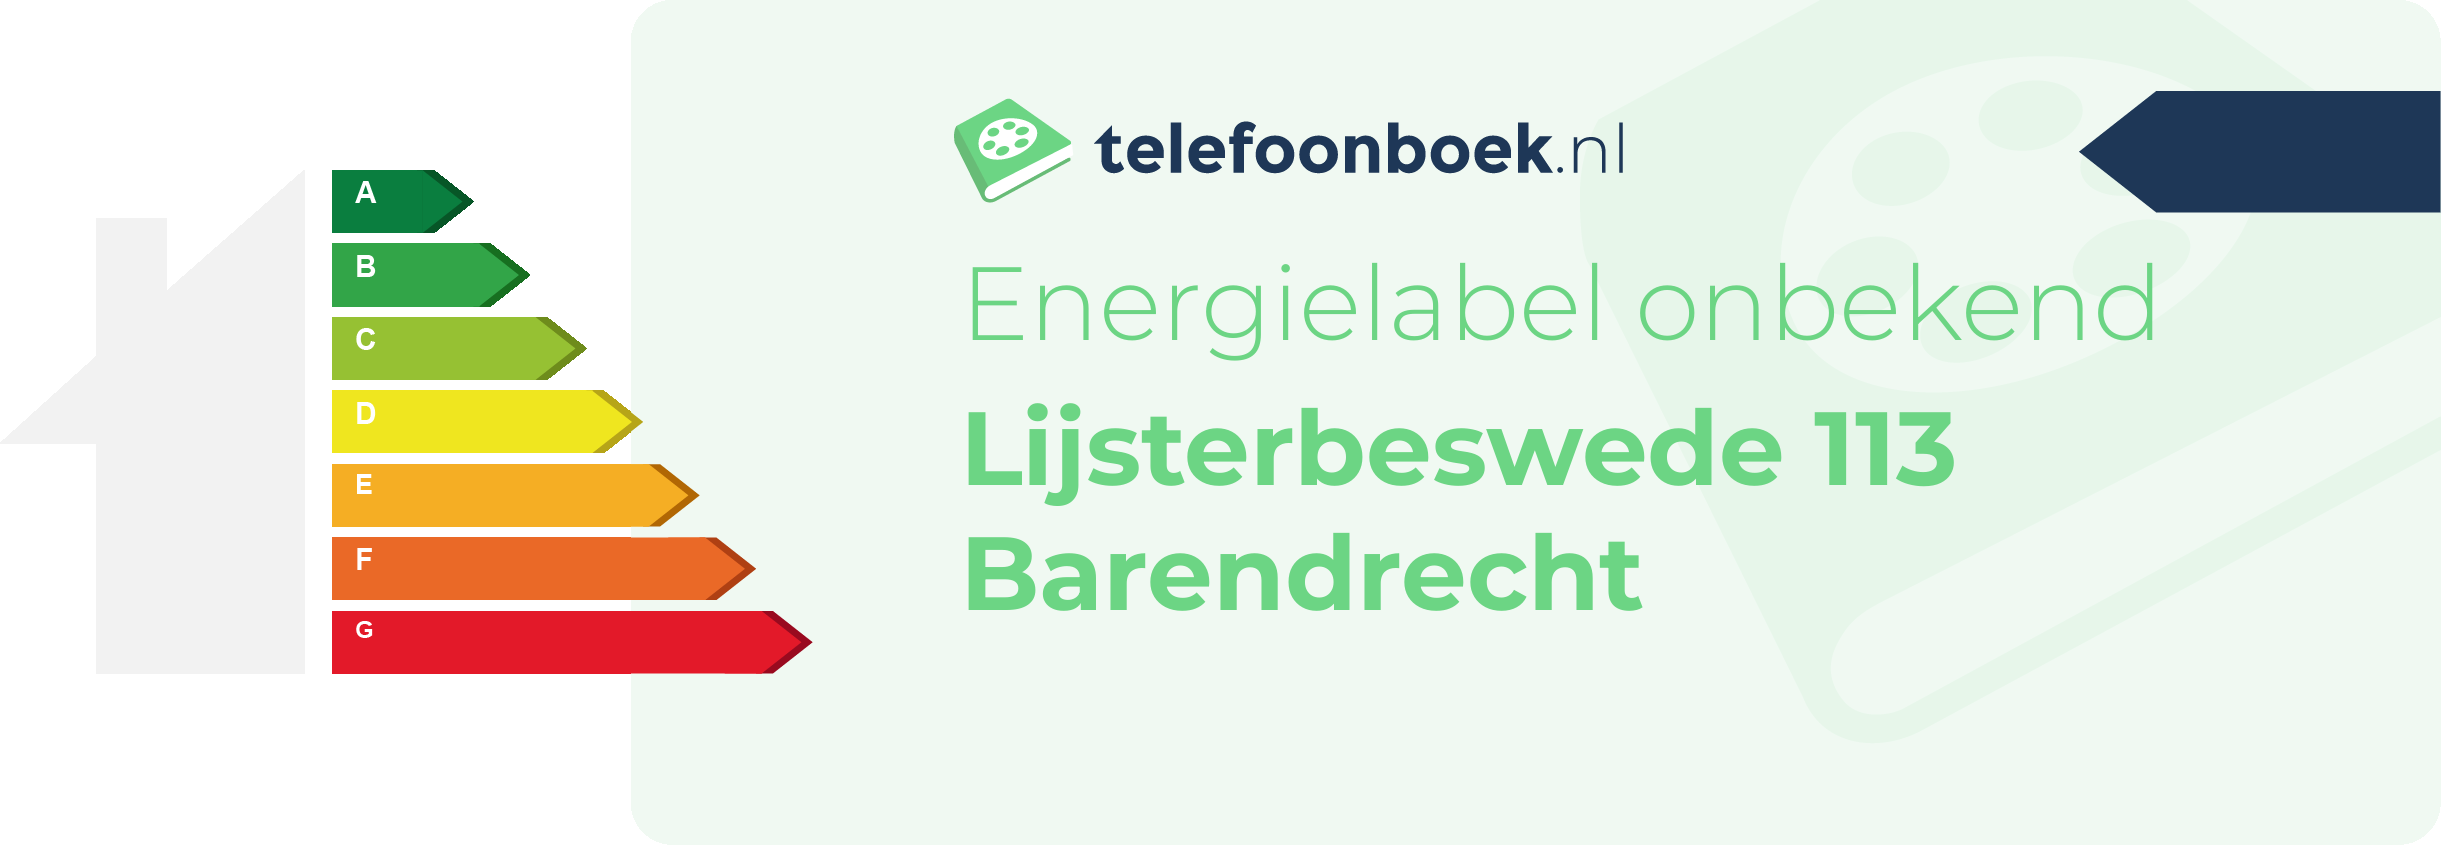 Energielabel Lijsterbeswede 113 Barendrecht